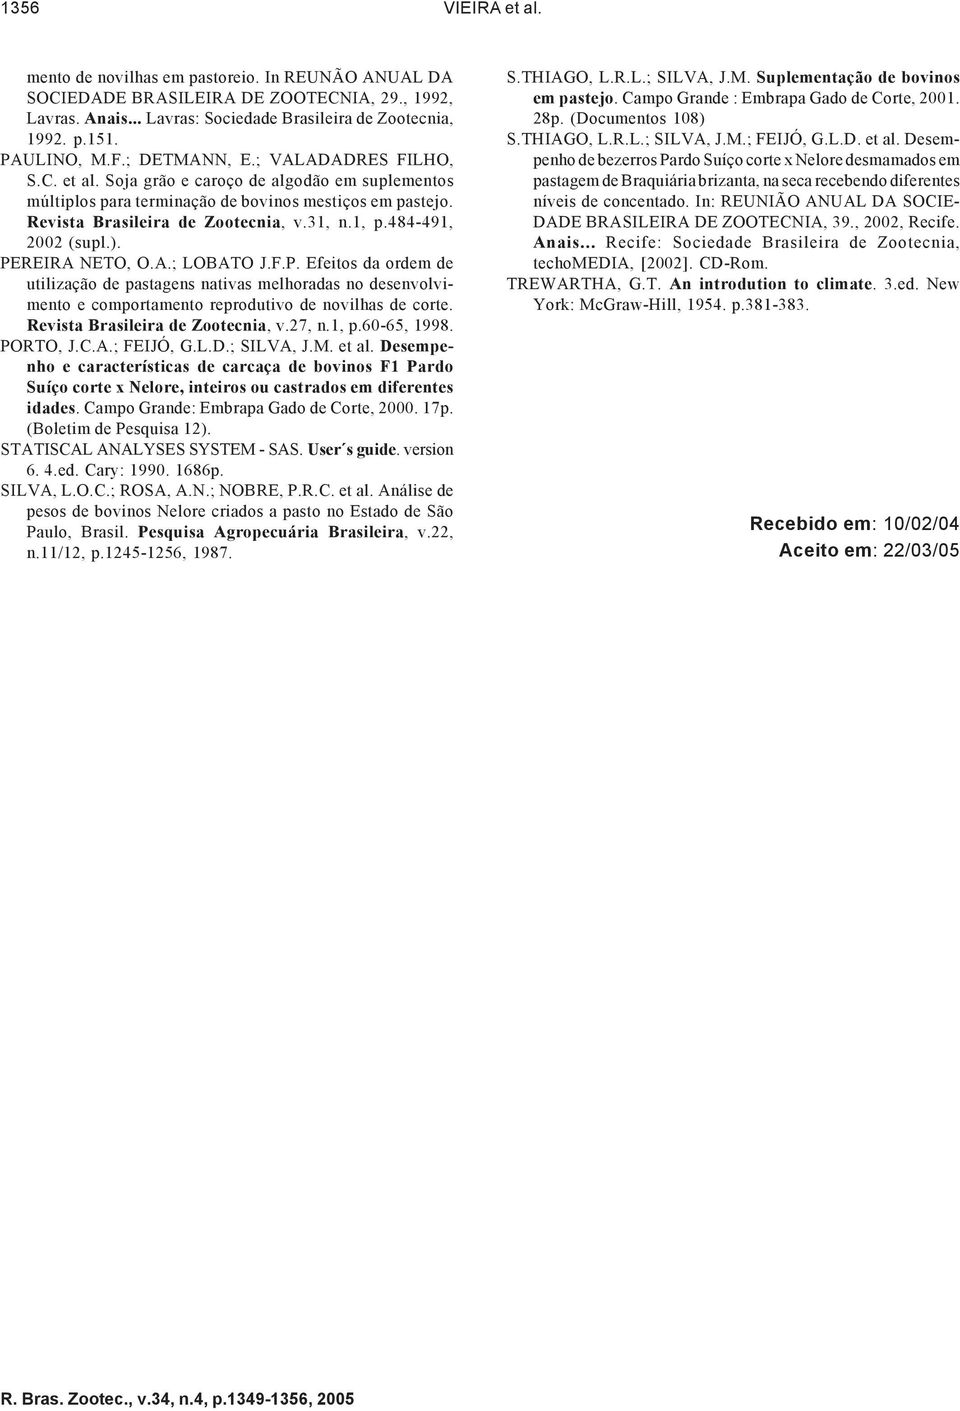 484-491, 2002 (supl.). PEREIRA NETO, O.A.; LOBATO J.F.P. Efeitos da ordem de utilização de pastagens nativas melhoradas no desenvolvimento e comportamento reprodutivo de novilhas de corte.